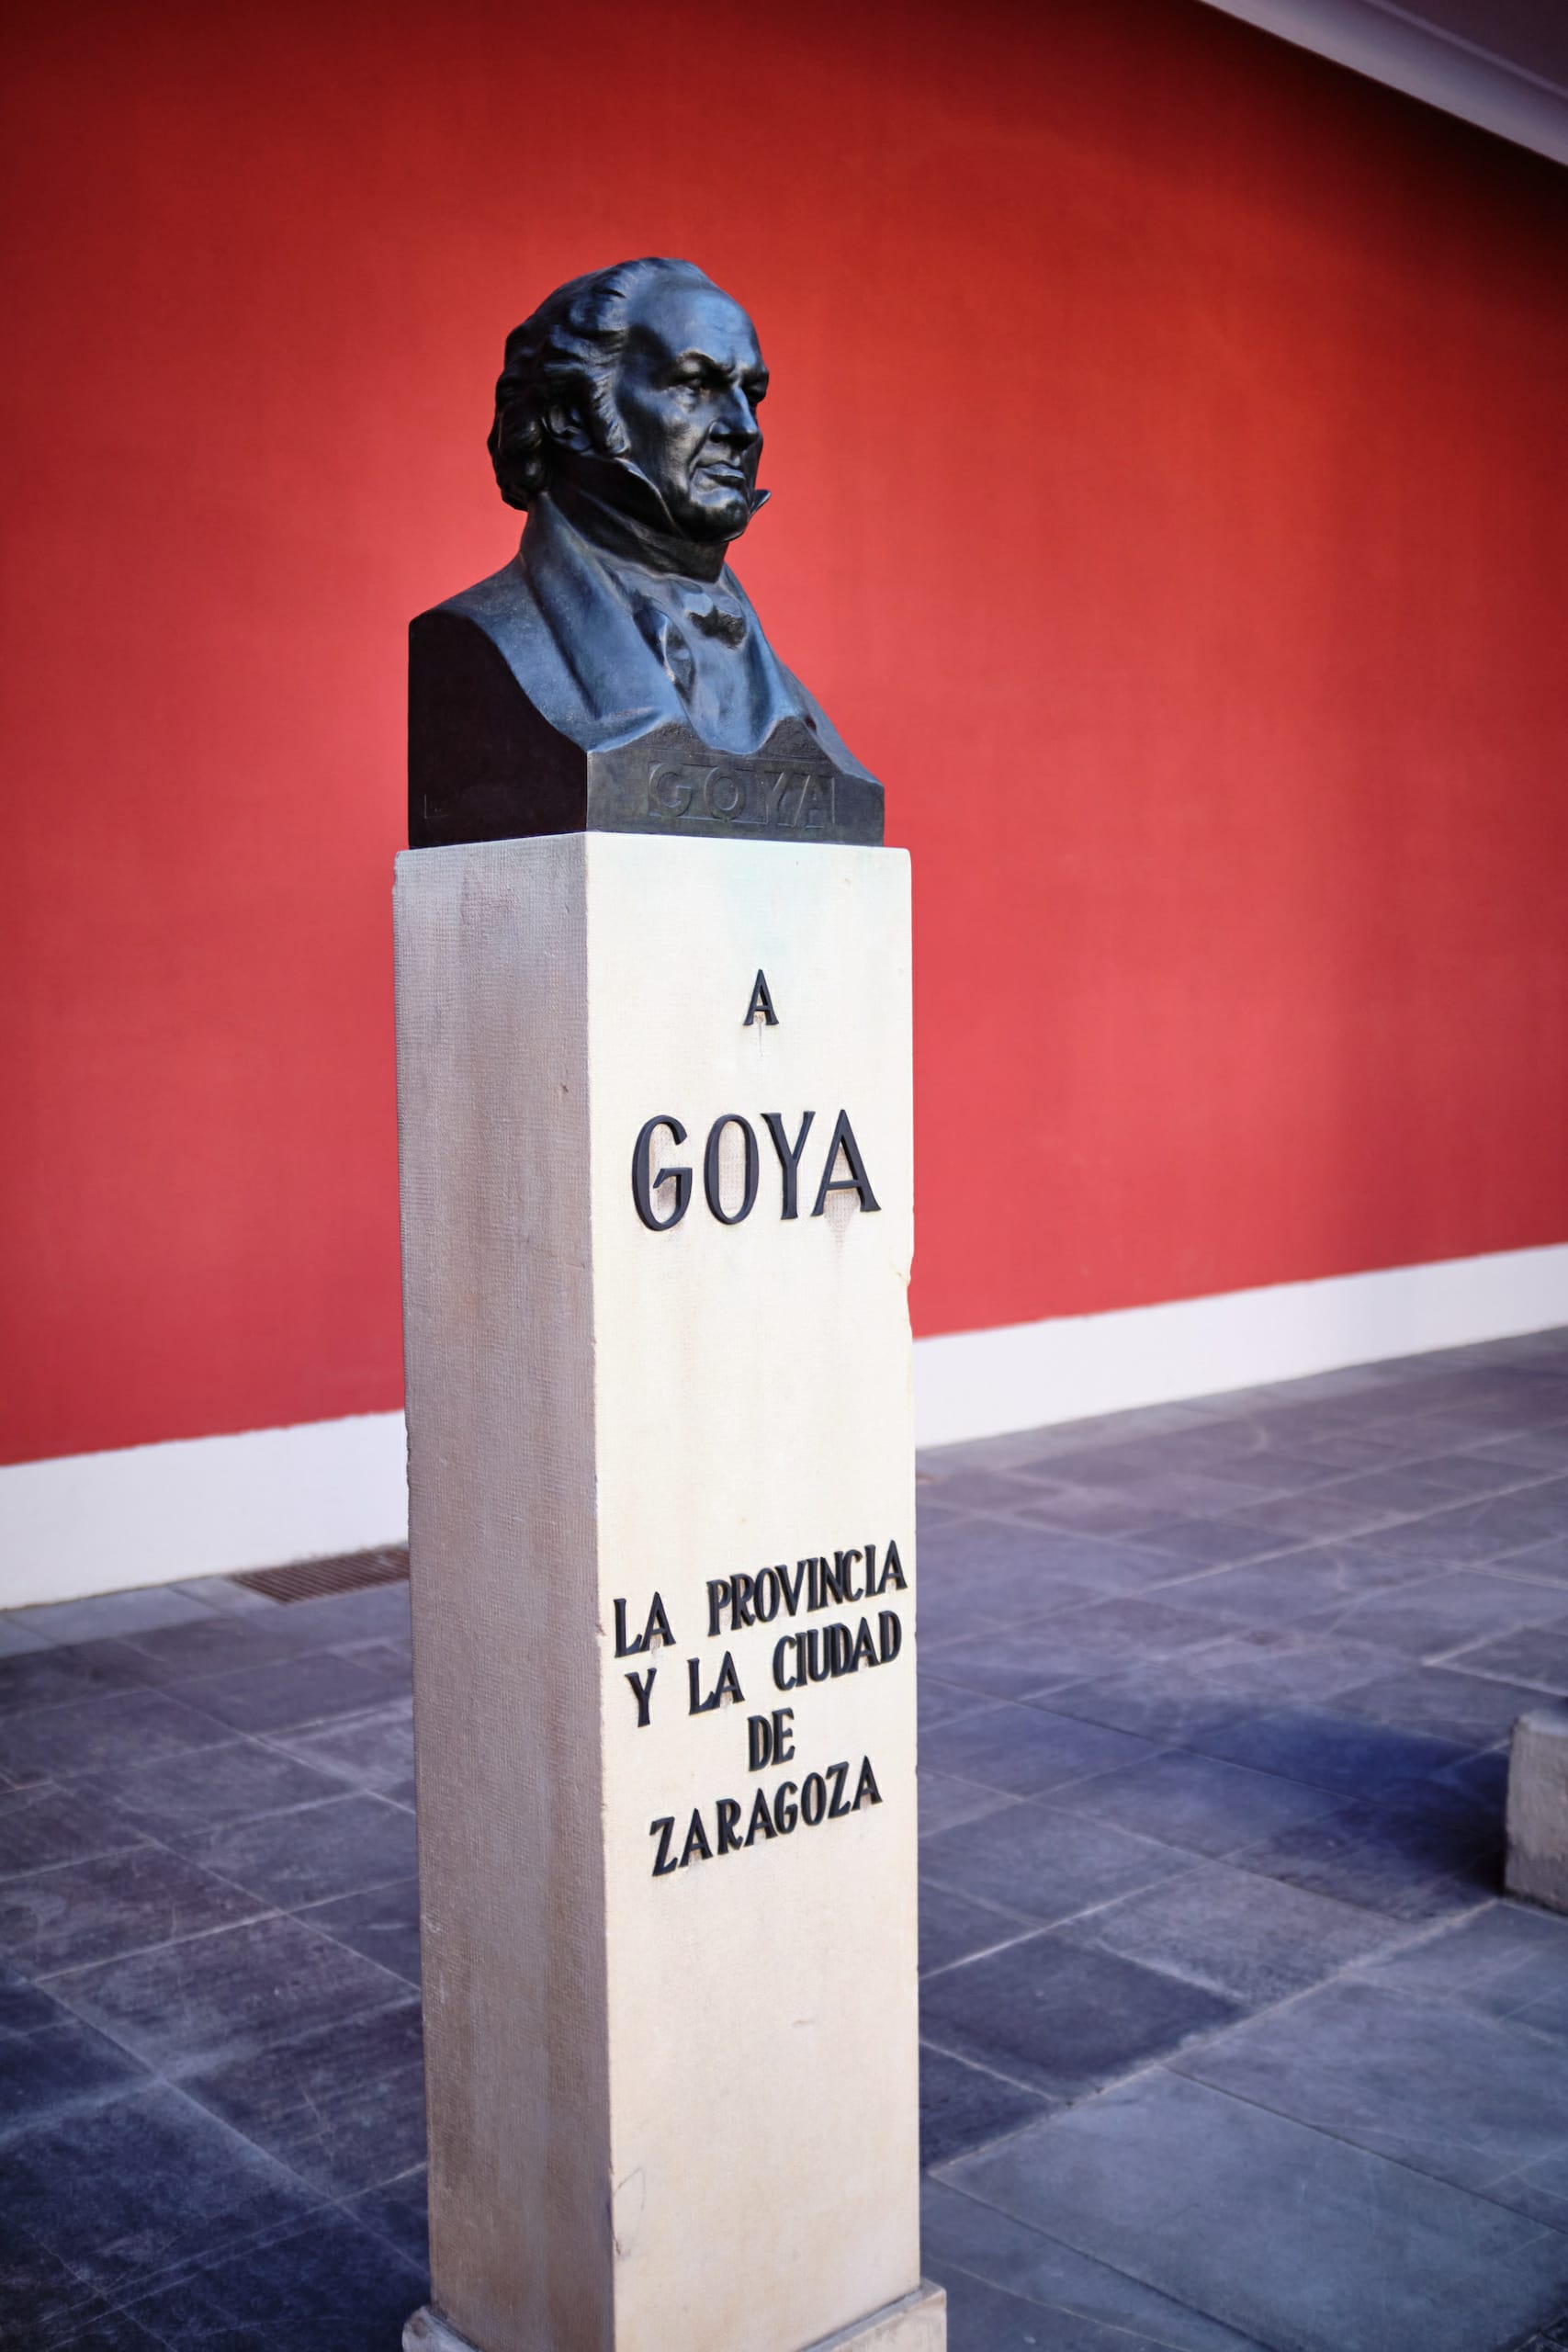 Statue des spanischen Malers Francisco de Goya in Saragossa